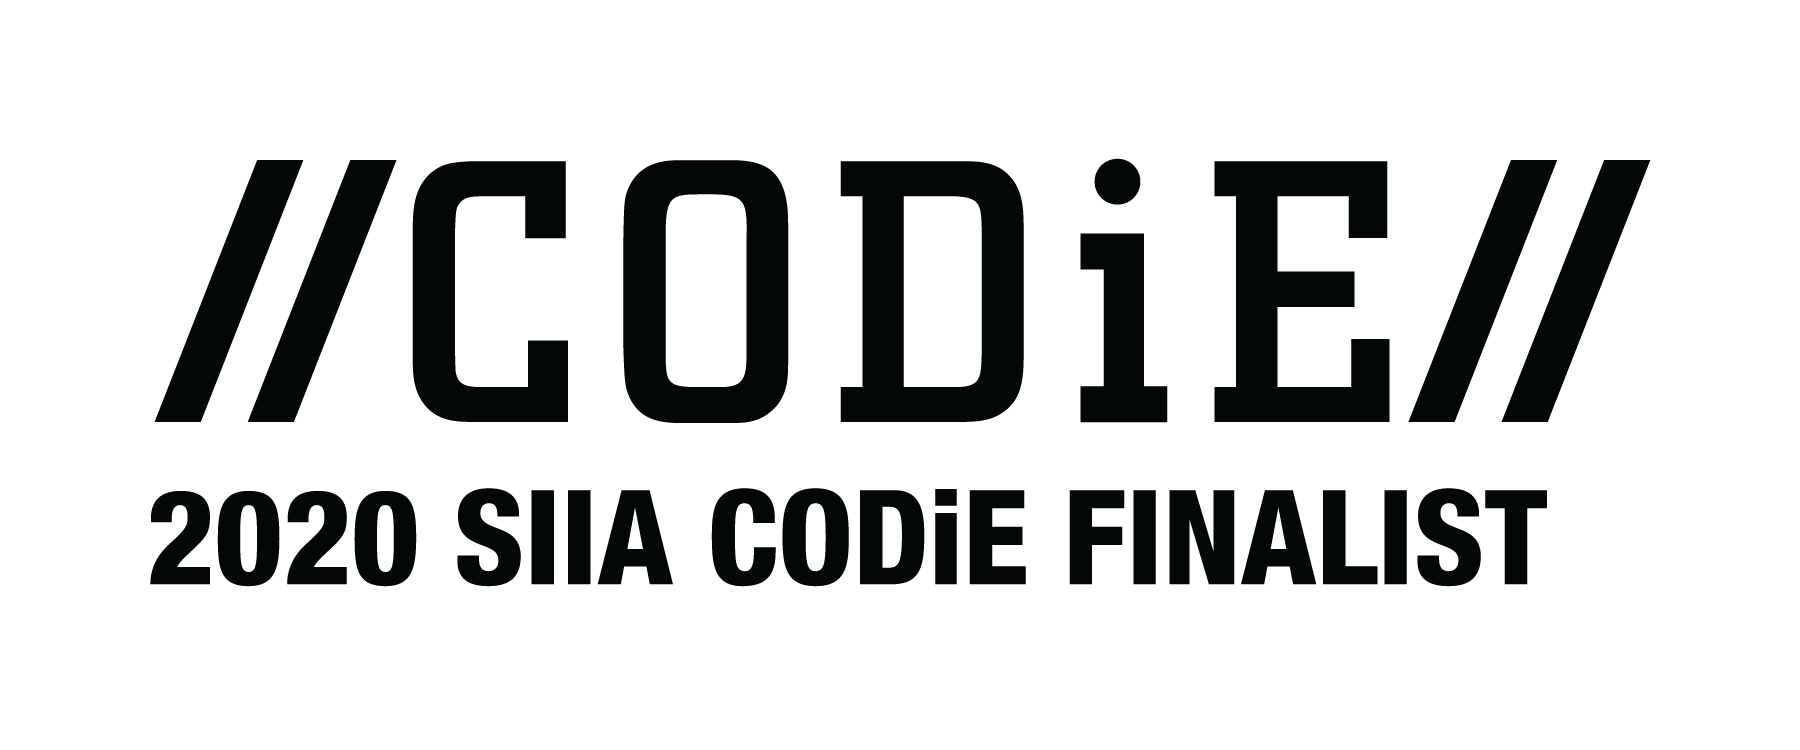 CODIE_2020_finalist_black